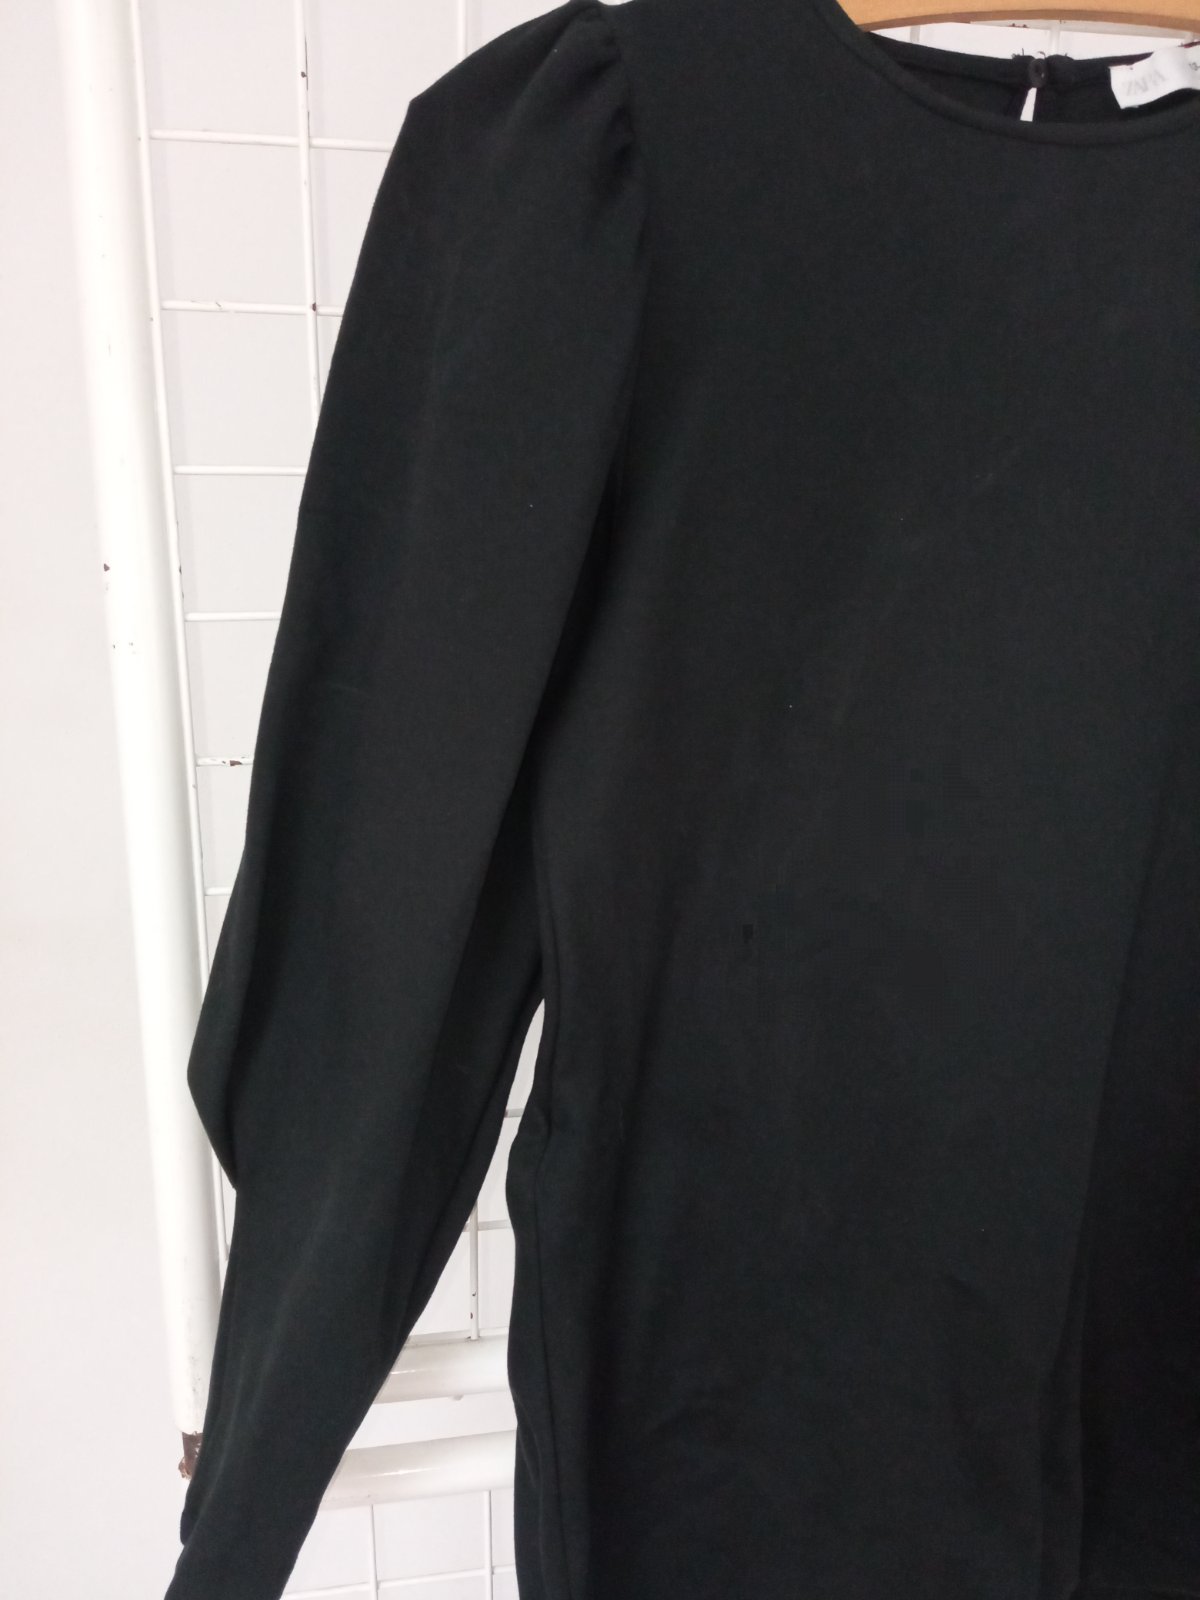 Čierne šaty Zara (13-14 r.)